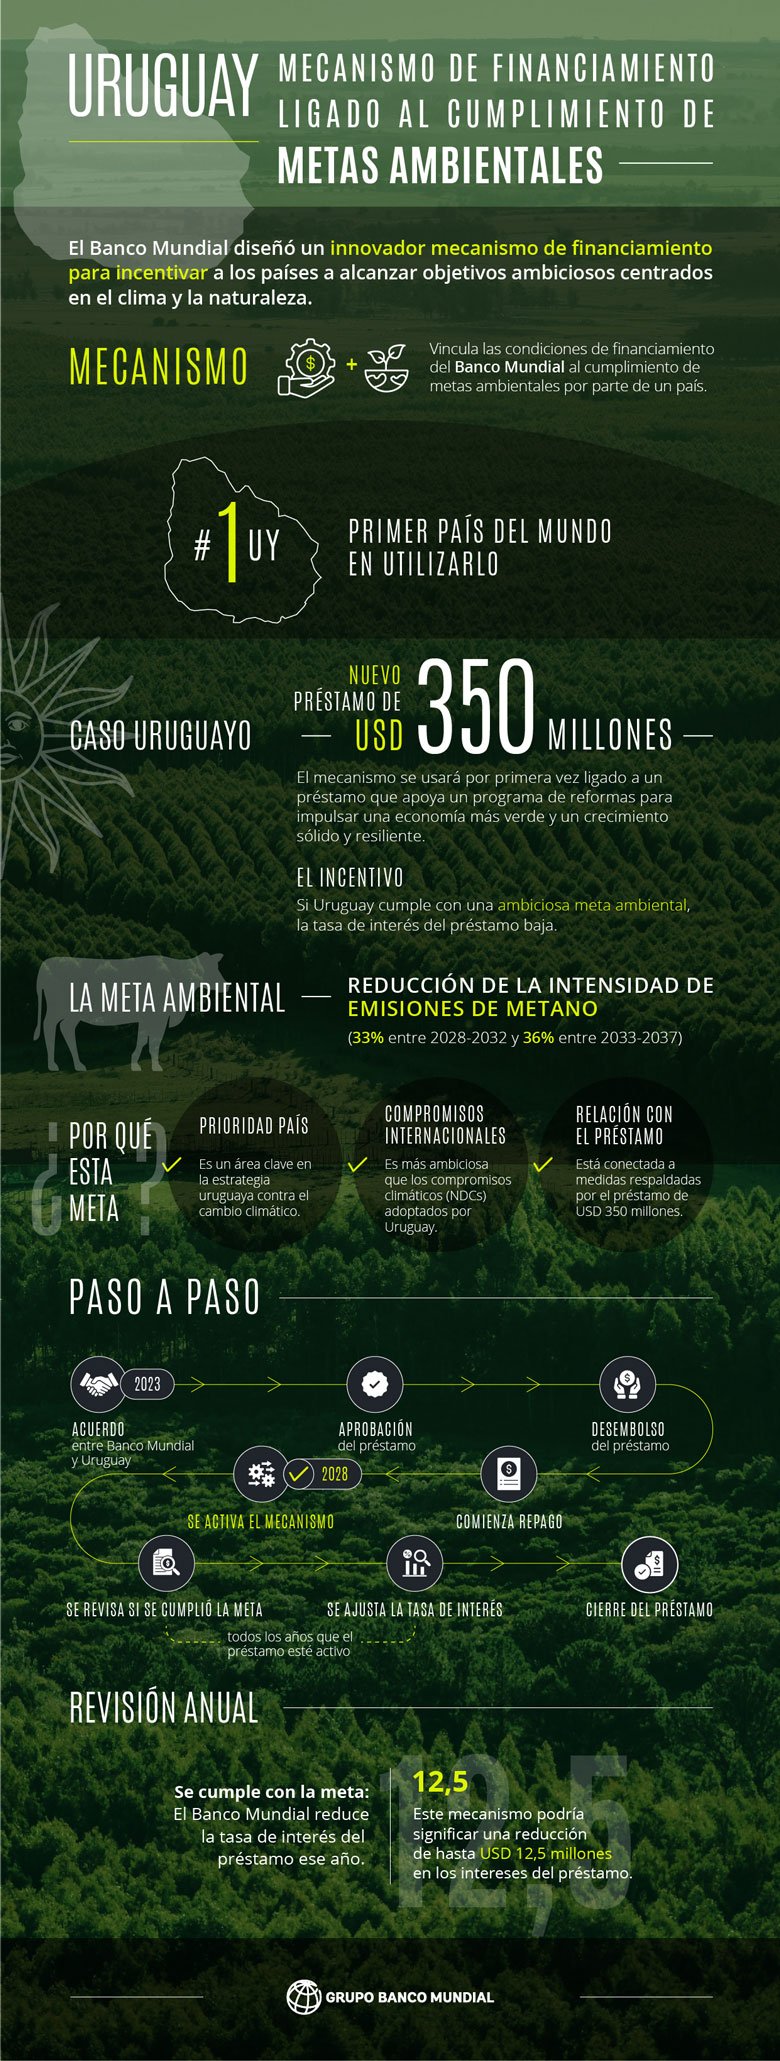 Mecanismo de financiamiento ligado al cumplimiento de metas ambientales, el caso de Uruguay